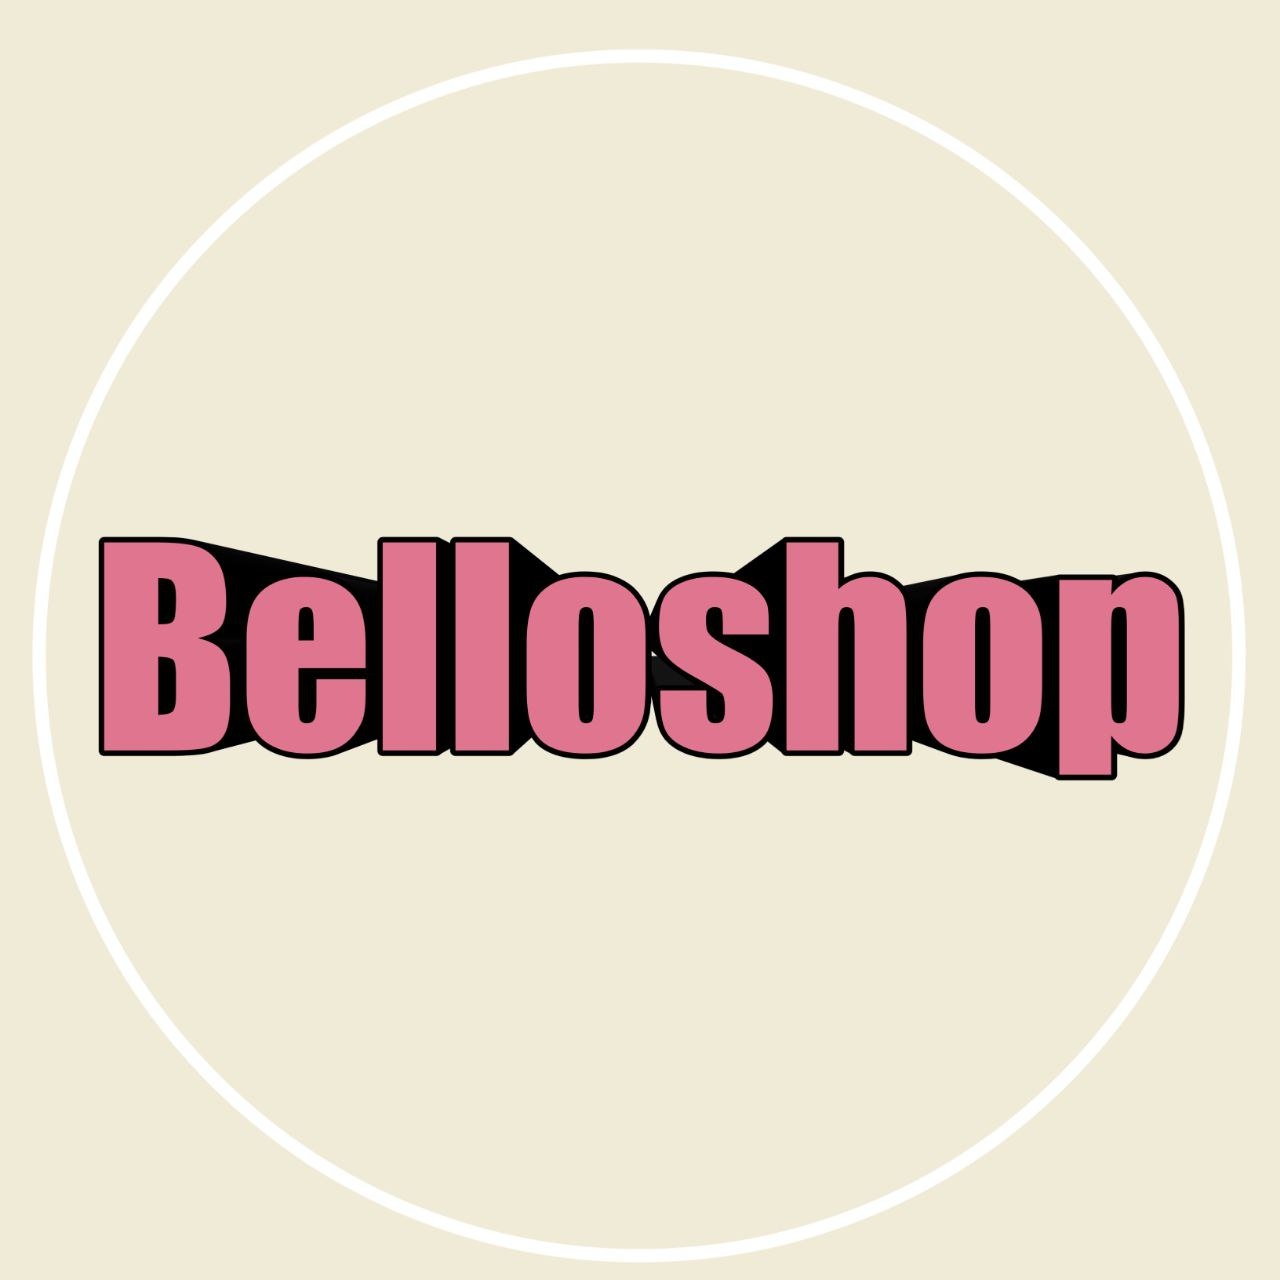 BELLOSHOPHK